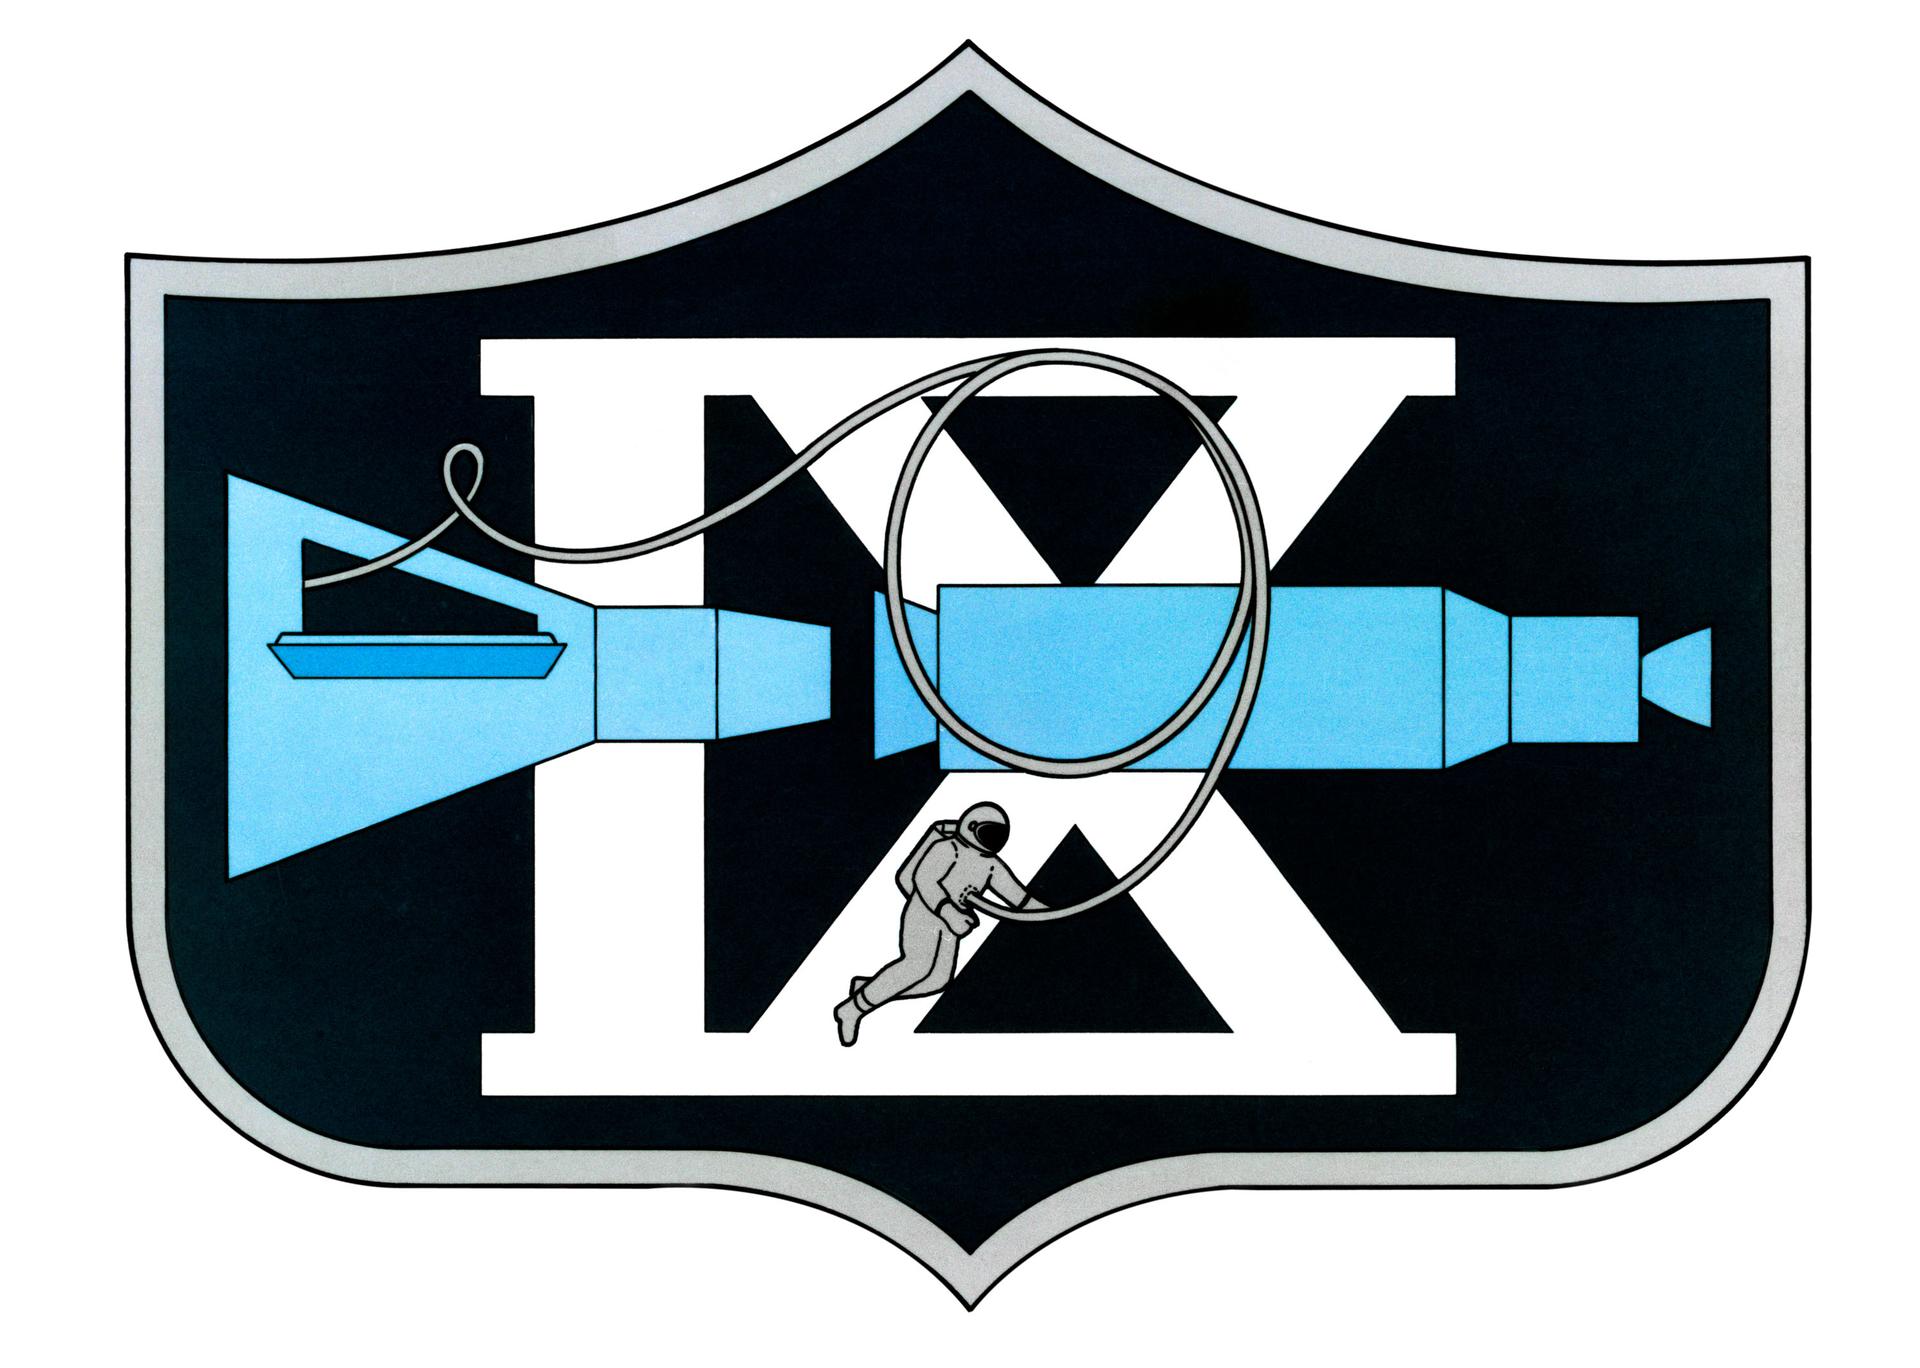 Gemini IX